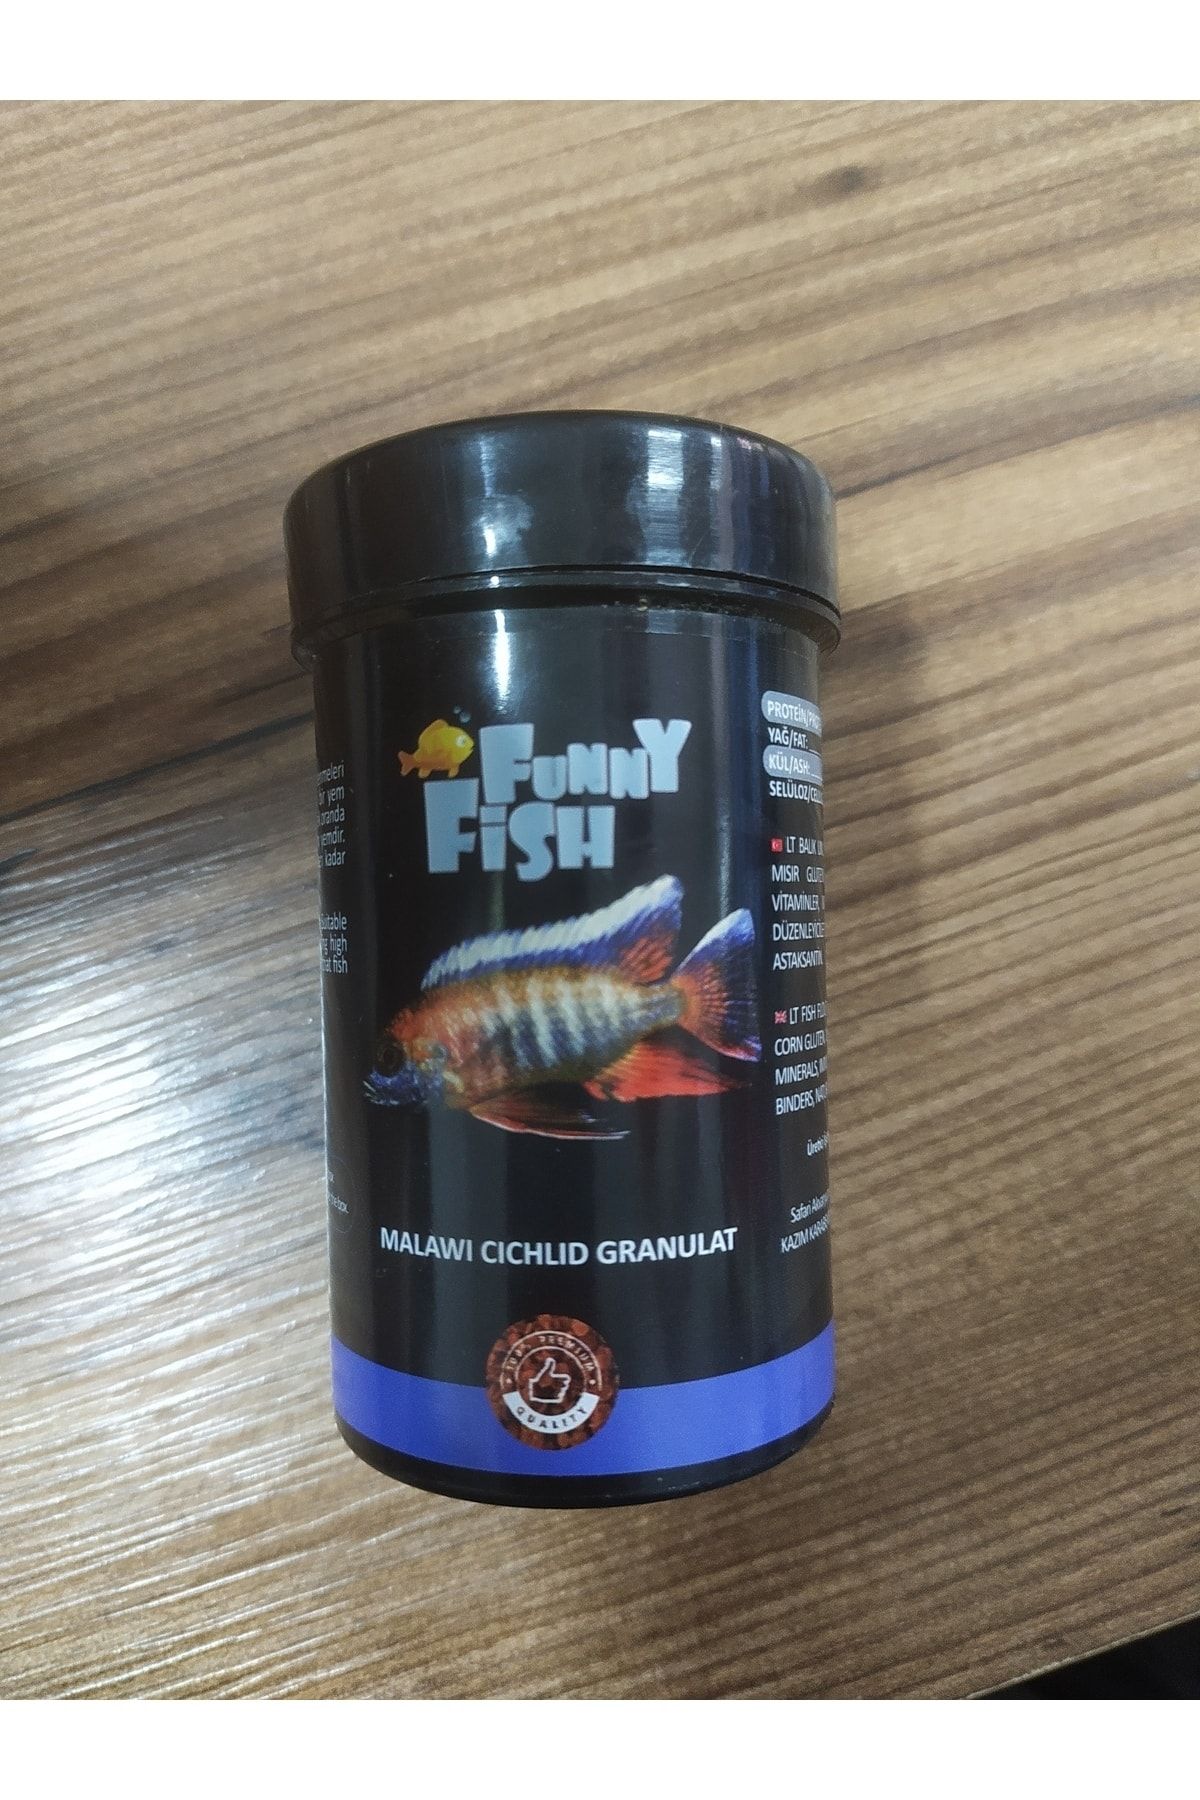 Funny fish malawi cichlid Yemi Granül